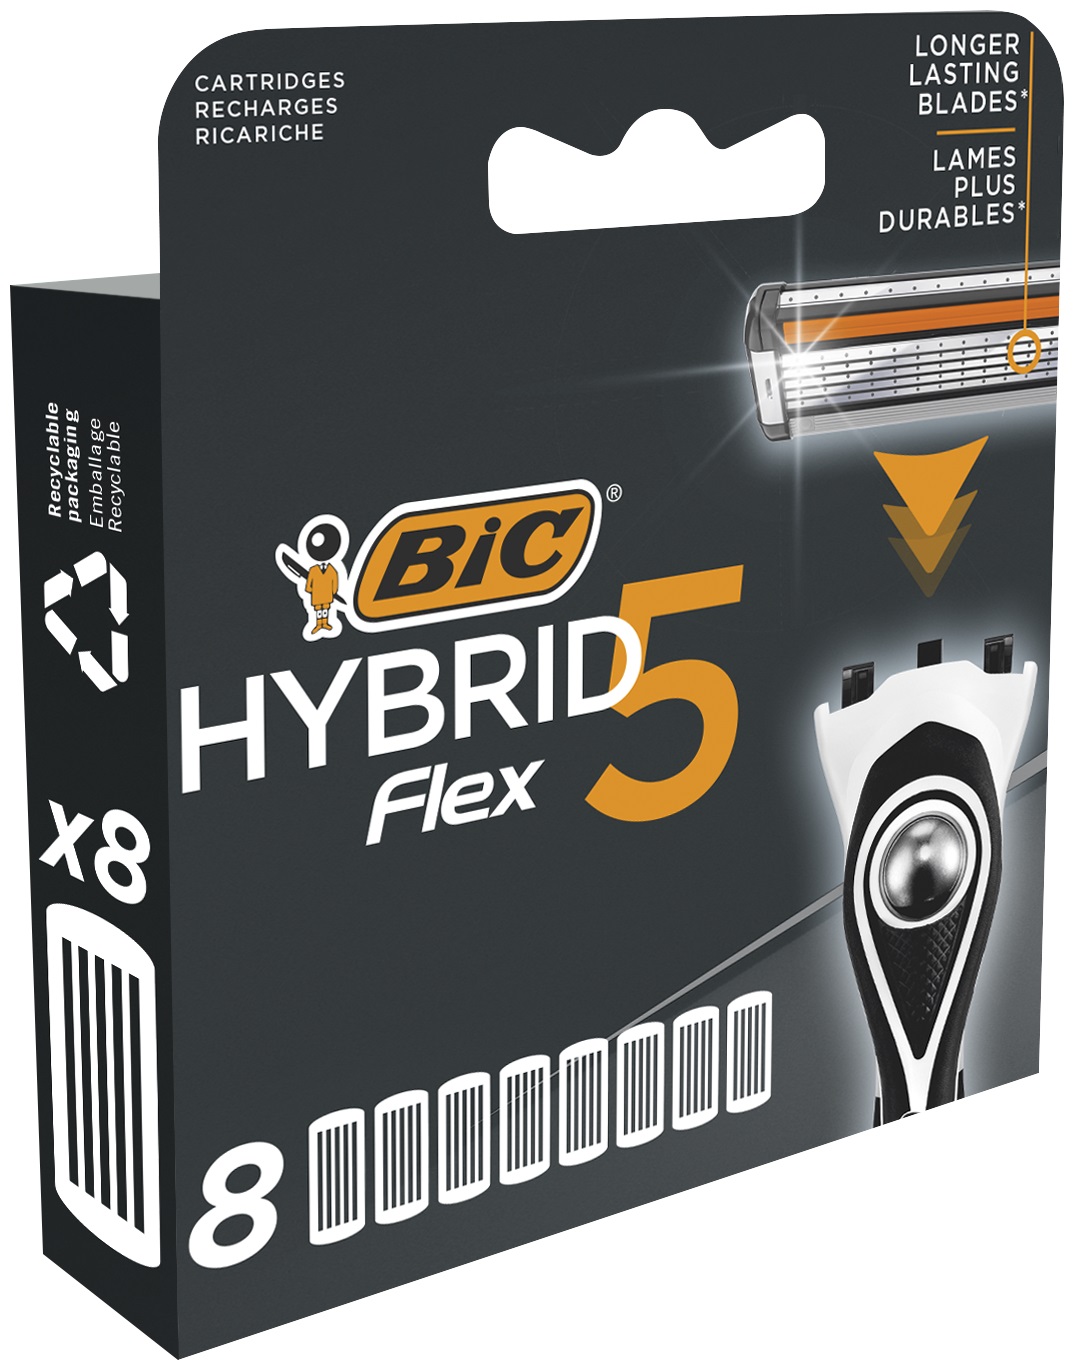 Змінні картриджі для гоління BIC Hybrid 5 Flex, 8 шт. - фото 2